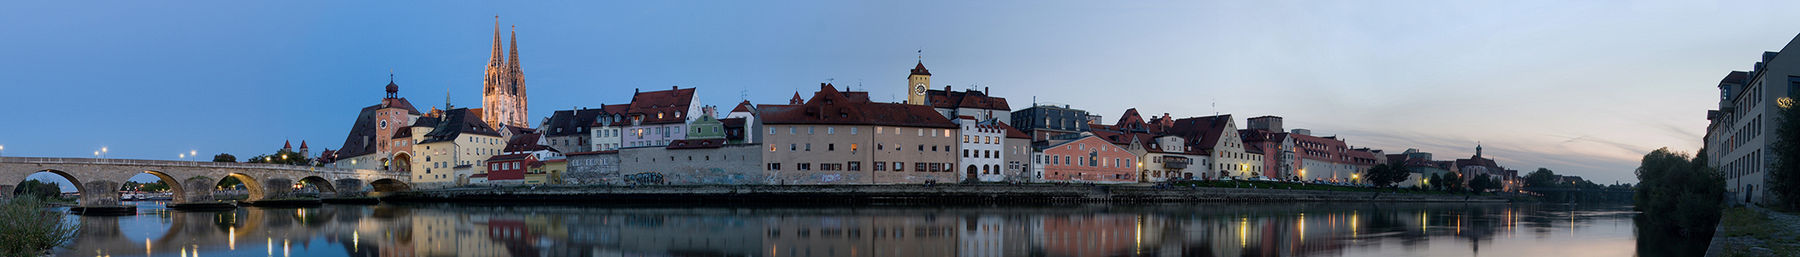 Regensburg banner.jpg